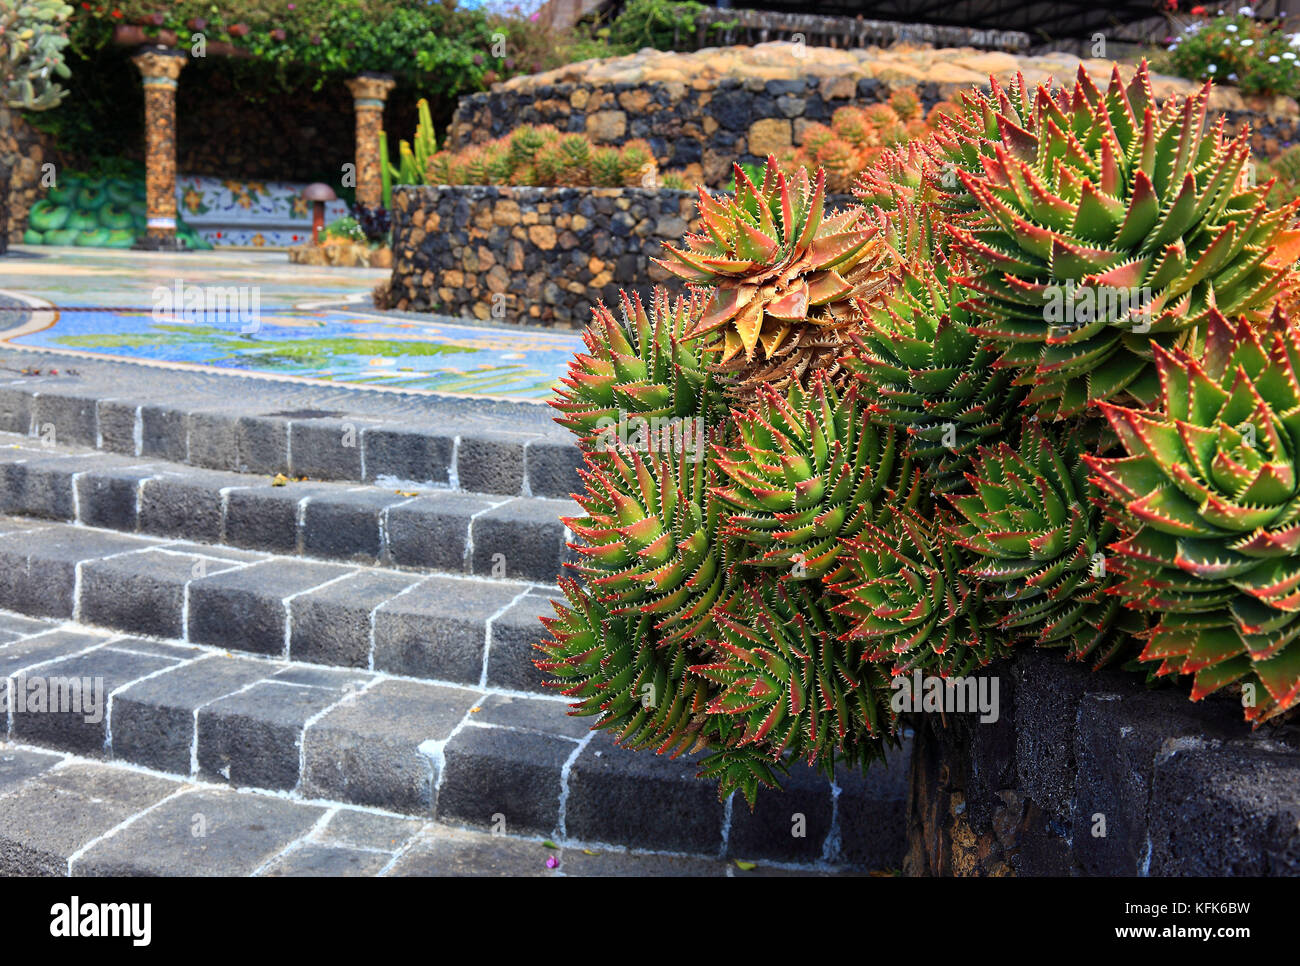 La Palma, Isola Canarie, Las Manchas regione, una piazza fatta di mosaici, piante e vulcani, Plaza La Glorieta, dall'artista Luis Morera, nella piccola Foto Stock